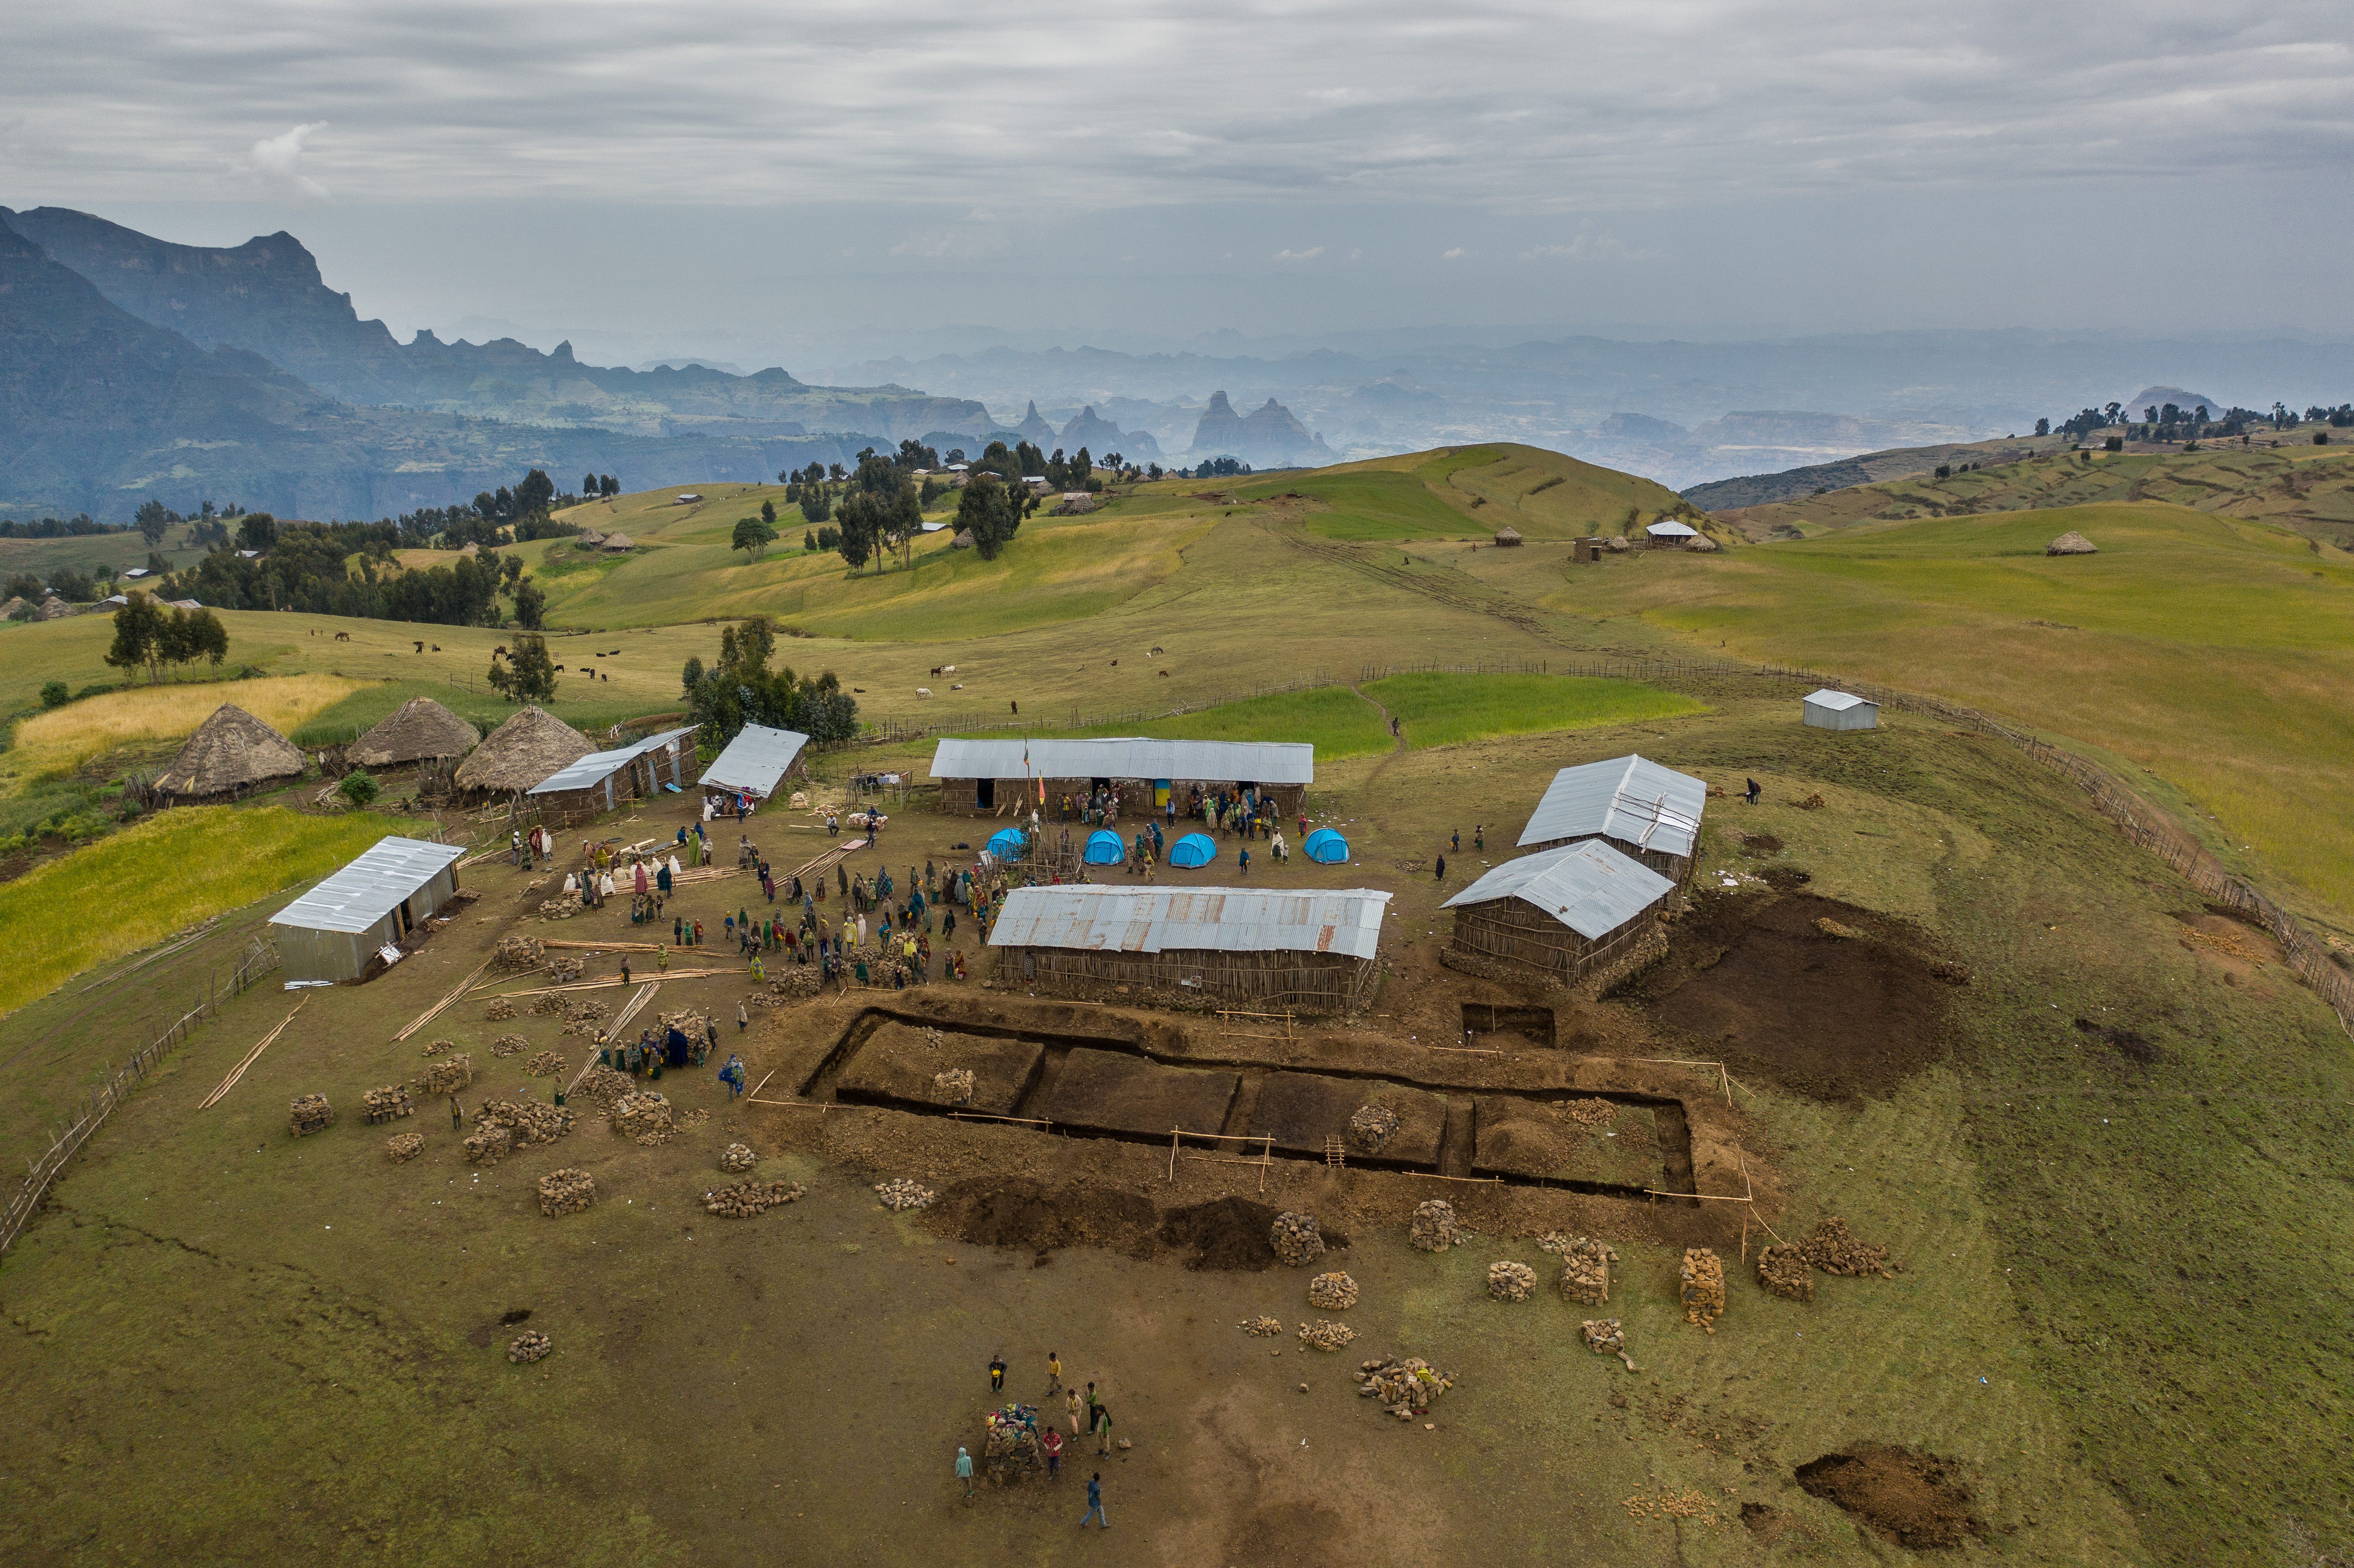 Sona, Simien Ethiopie construction école